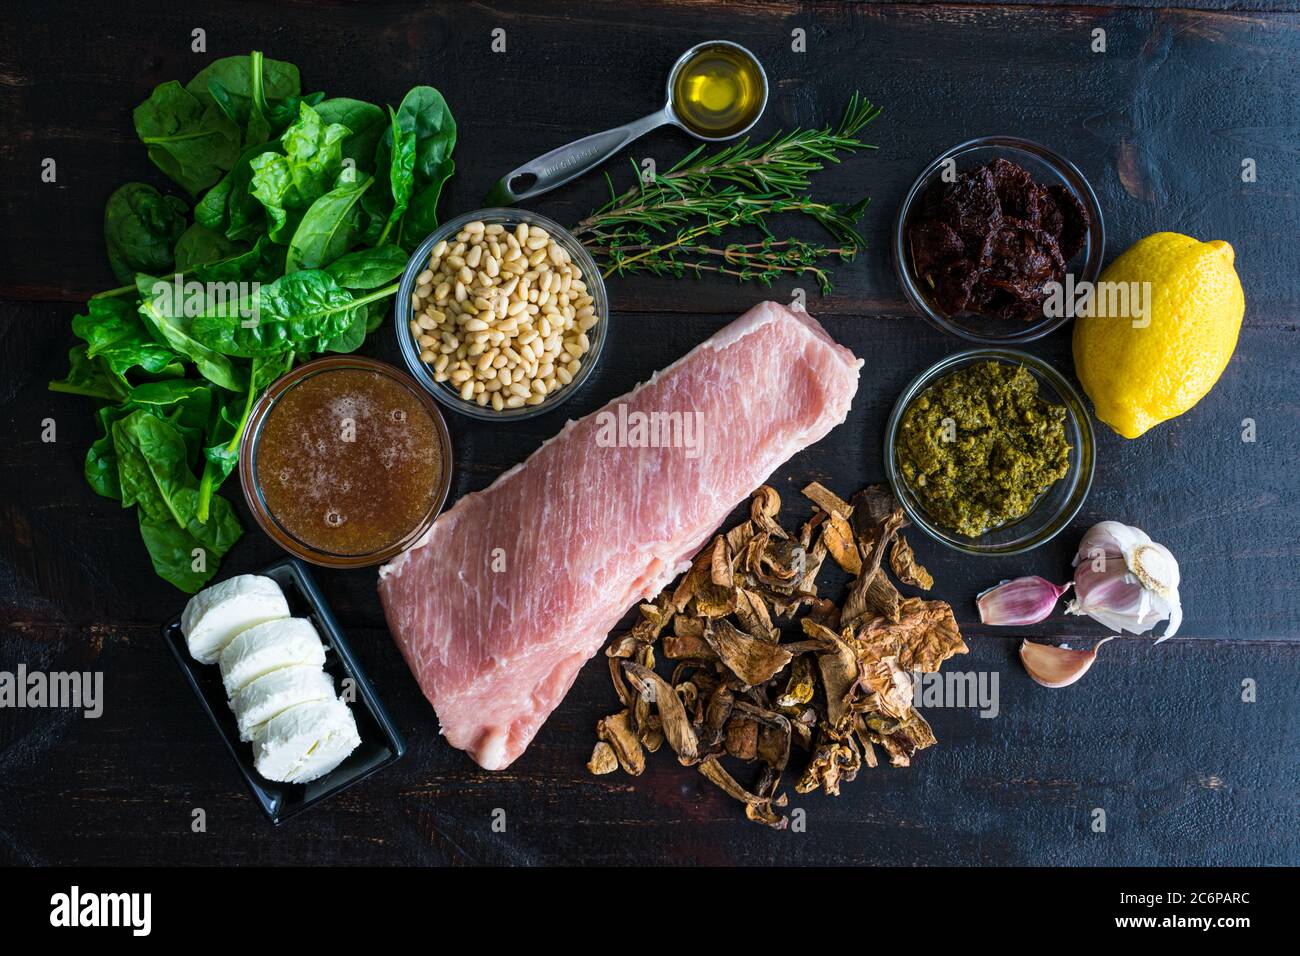 Filet de porc farci méditerranéen Ingrédients: Ingrédients crus utilisés pour faire un rôti de porc farci Banque D'Images